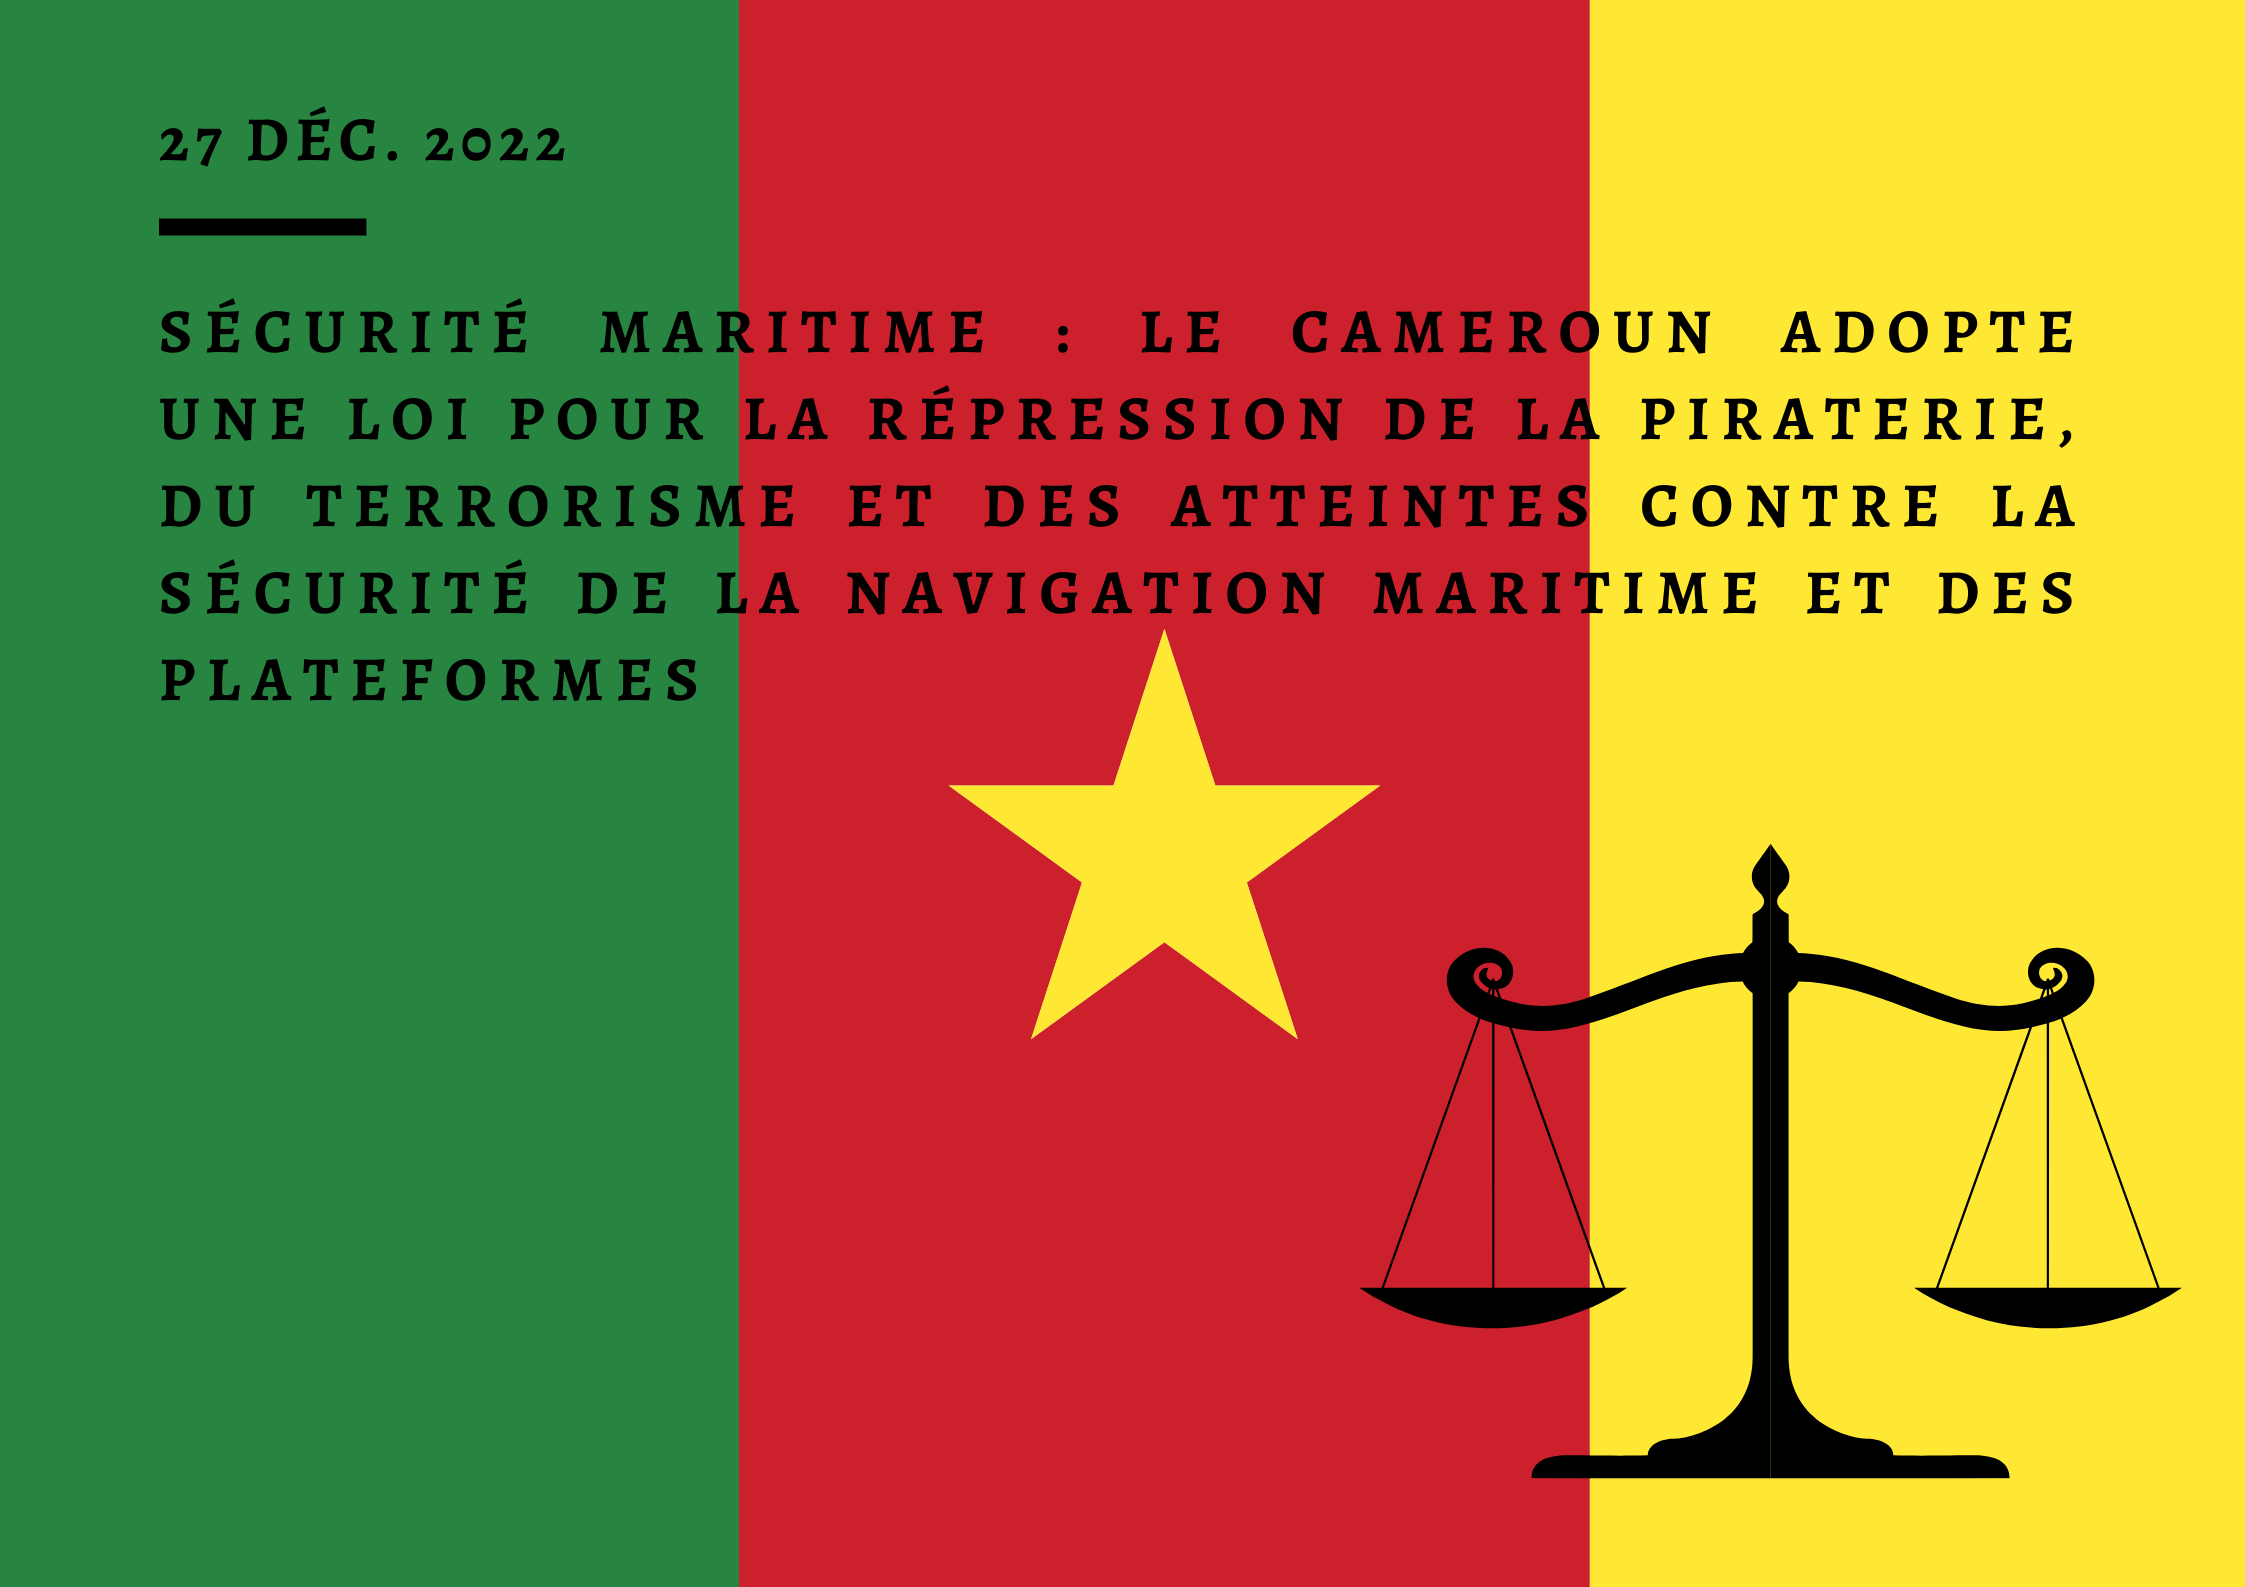 Sécurité maritime : le Cameroun adopte une loi pour la répression de la piraterie, du terrorisme et des atteintes contre la sécurité de la navigation maritime et des plateformes